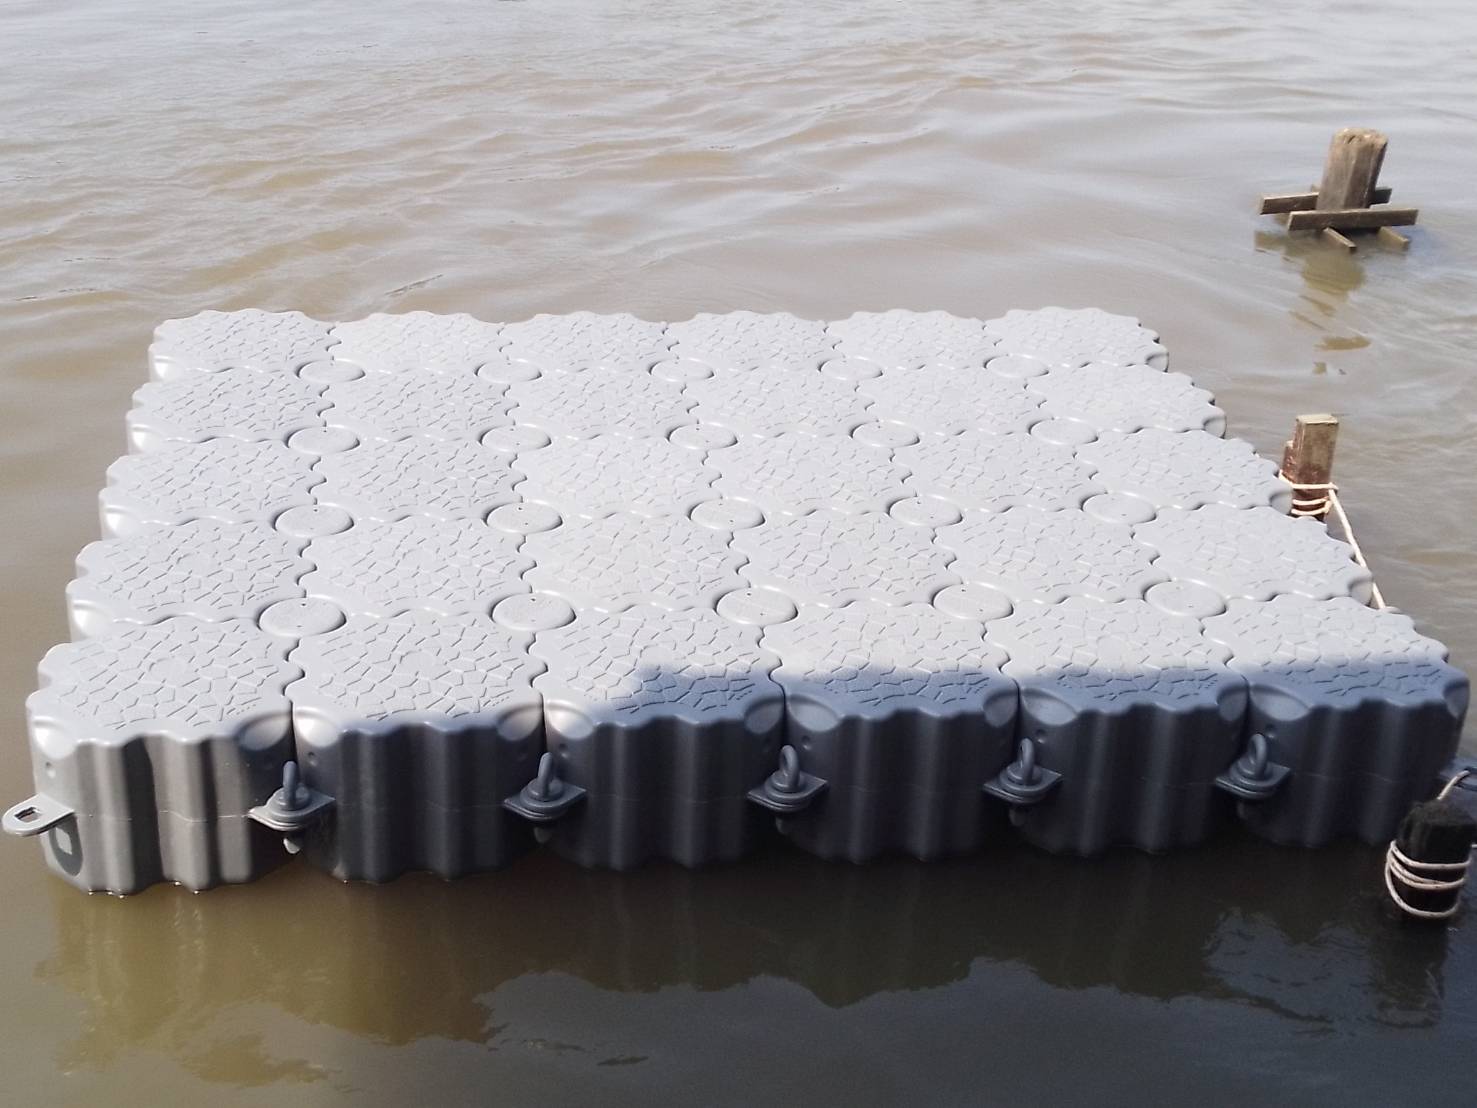 ทุ่นลอยน้ำอเนกประสงค์ ทุ่นจิ๊กซอว์ ทุ่นลอยน้ำ ทุ่นพลาสติก  ขนาด 50x50x40Cm. รับน้ำหนักได้ 90 kg./ลูก รับประกัน 3 ปี